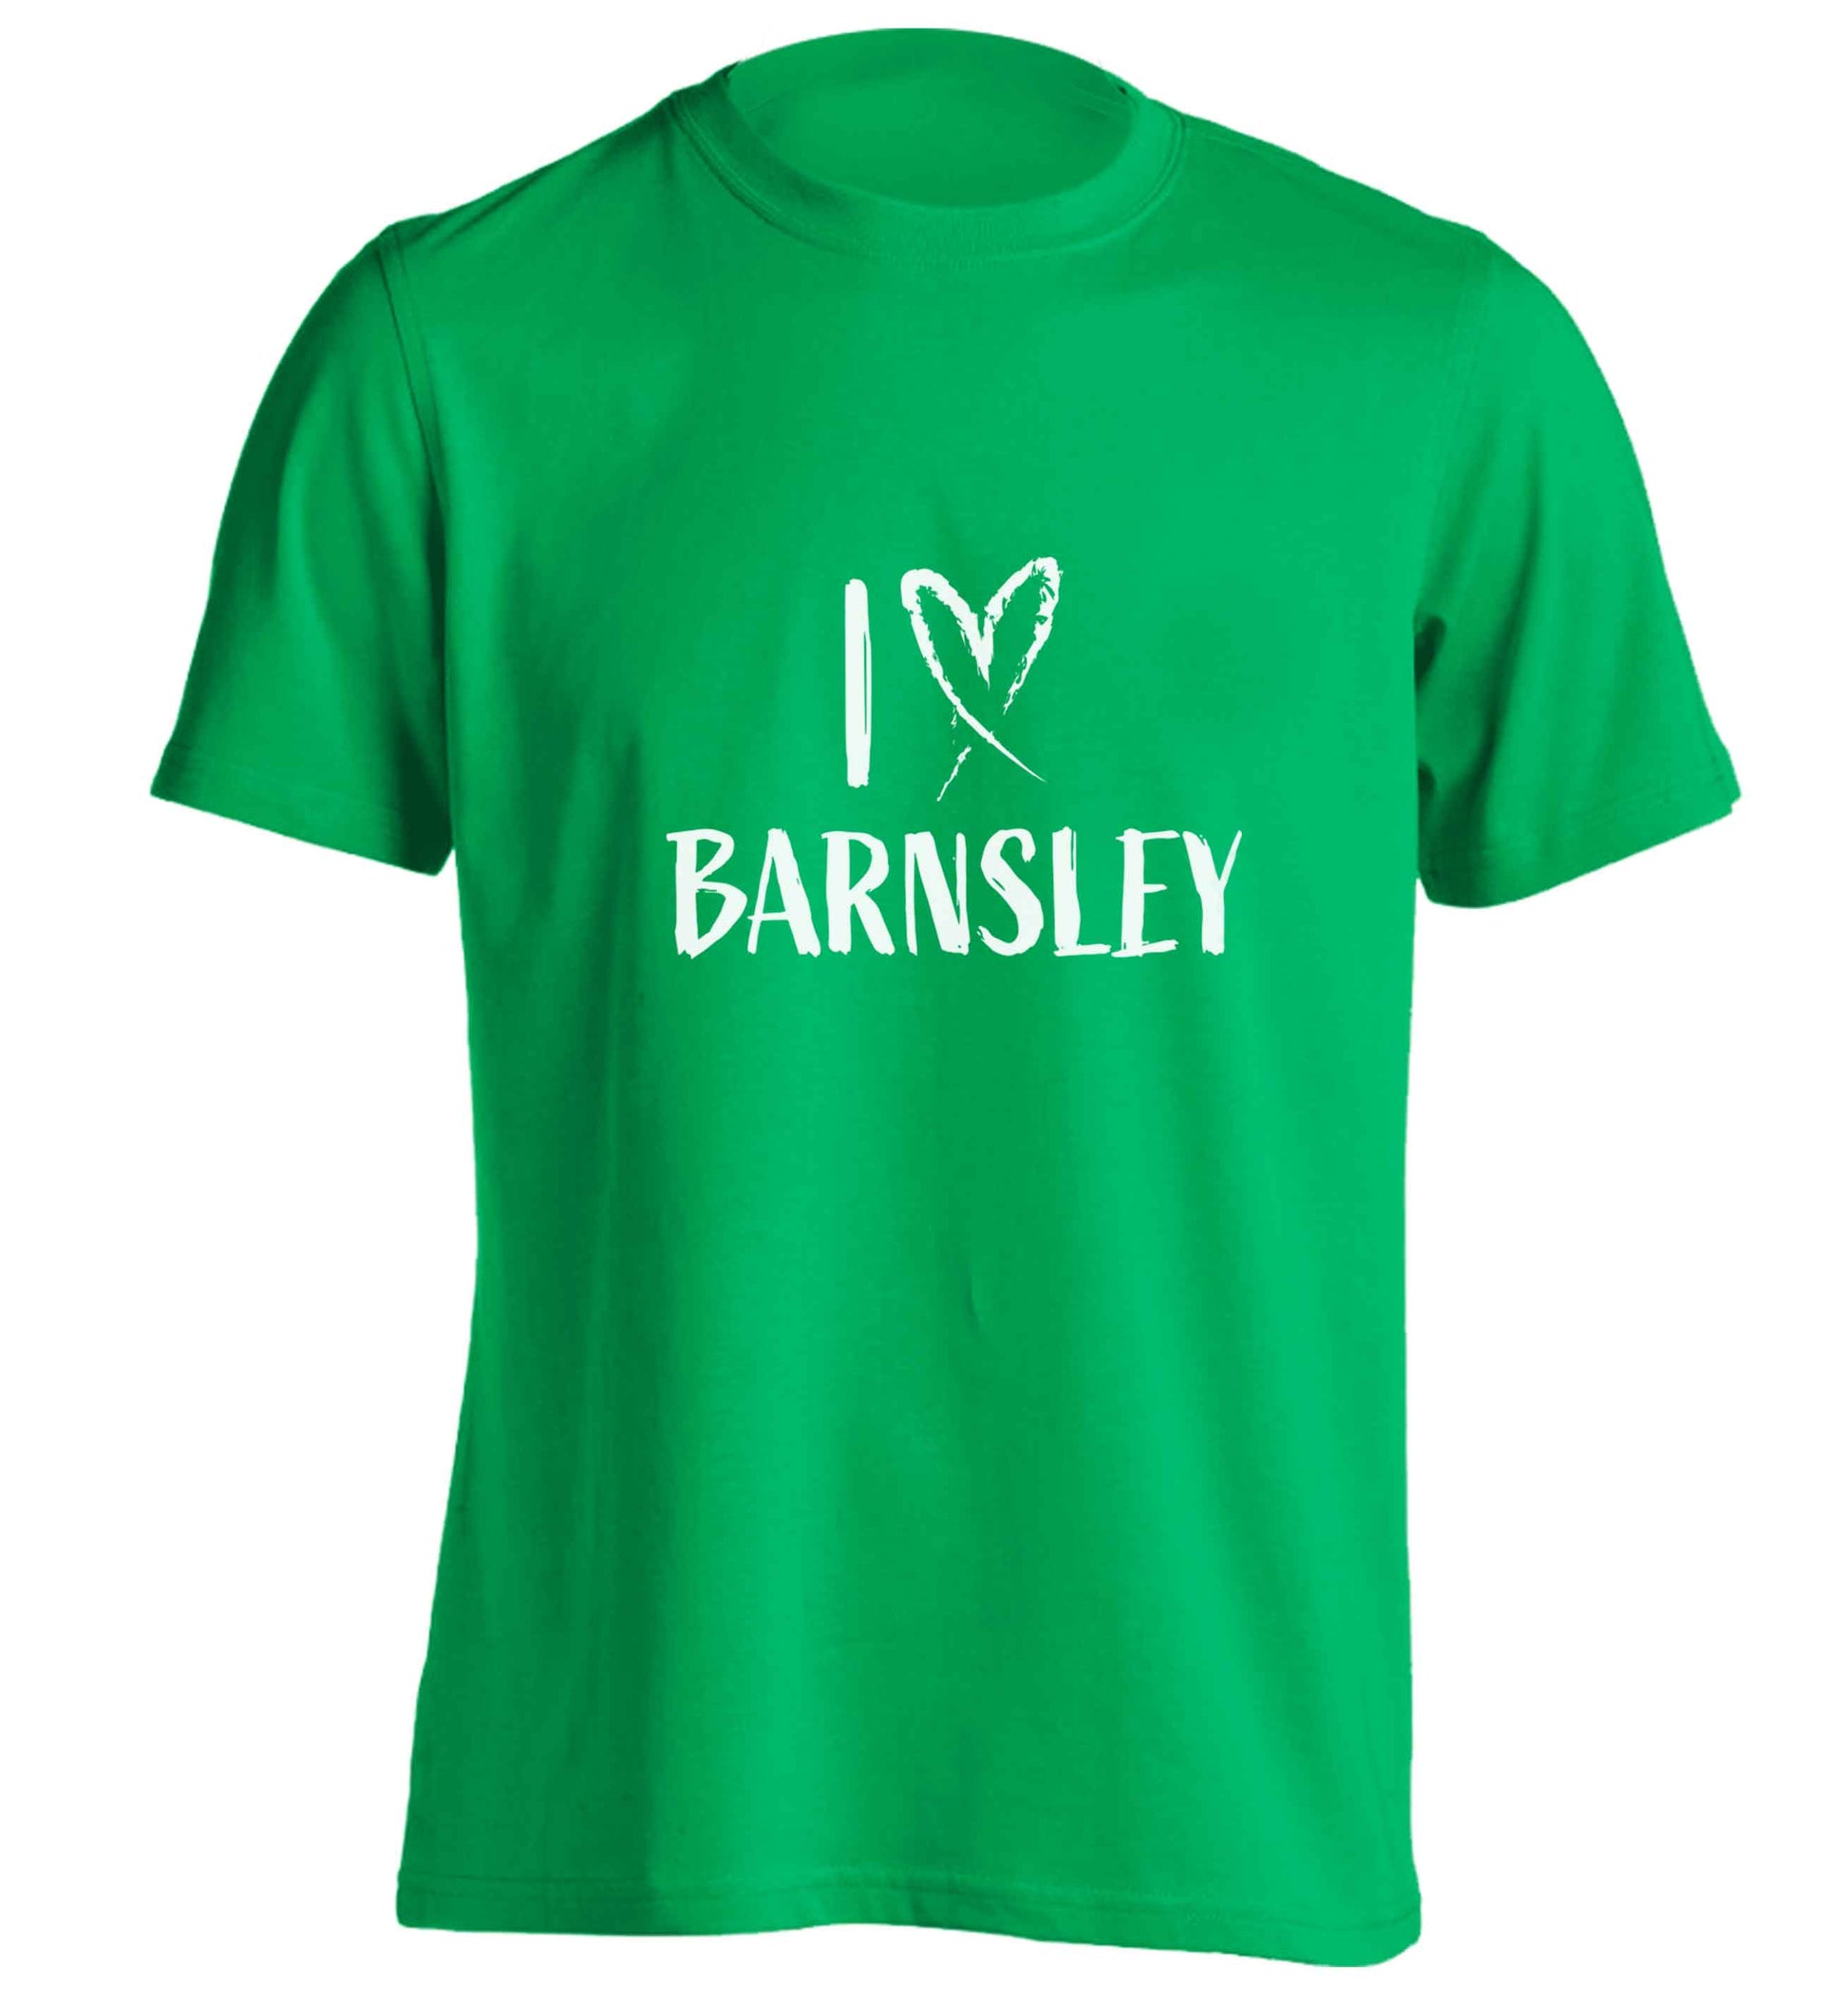 I love Barnsley adults unisex green Tshirt 2XL